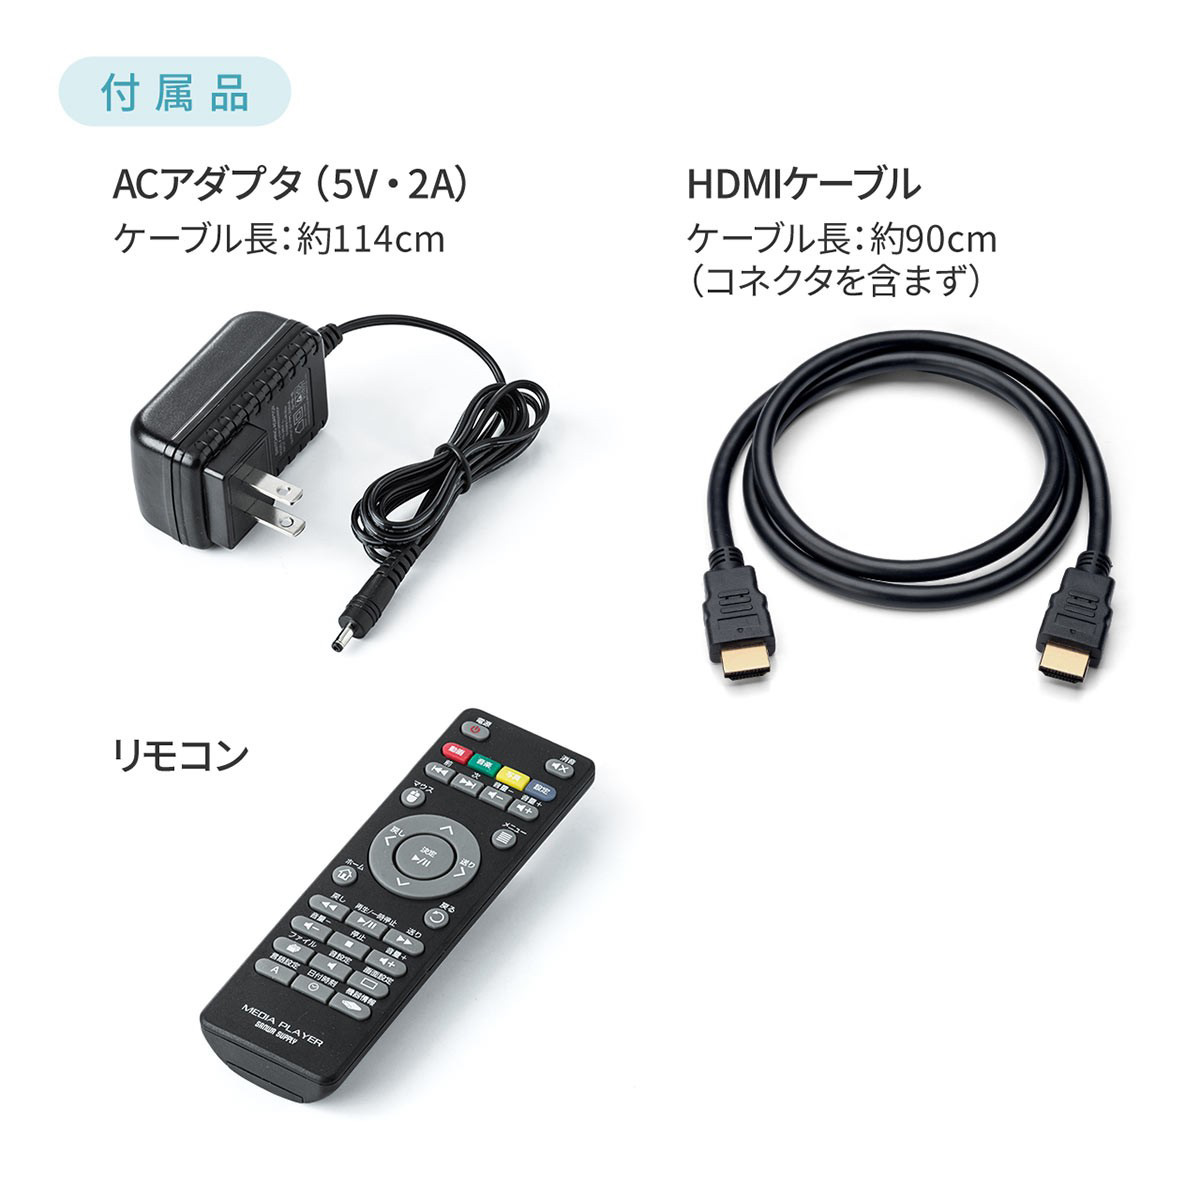 メディアプレーヤー 4K対応 SDカード を テレビ で 再生 HDMI USBメモリ 400-MEDI023｜sanwadirect｜16